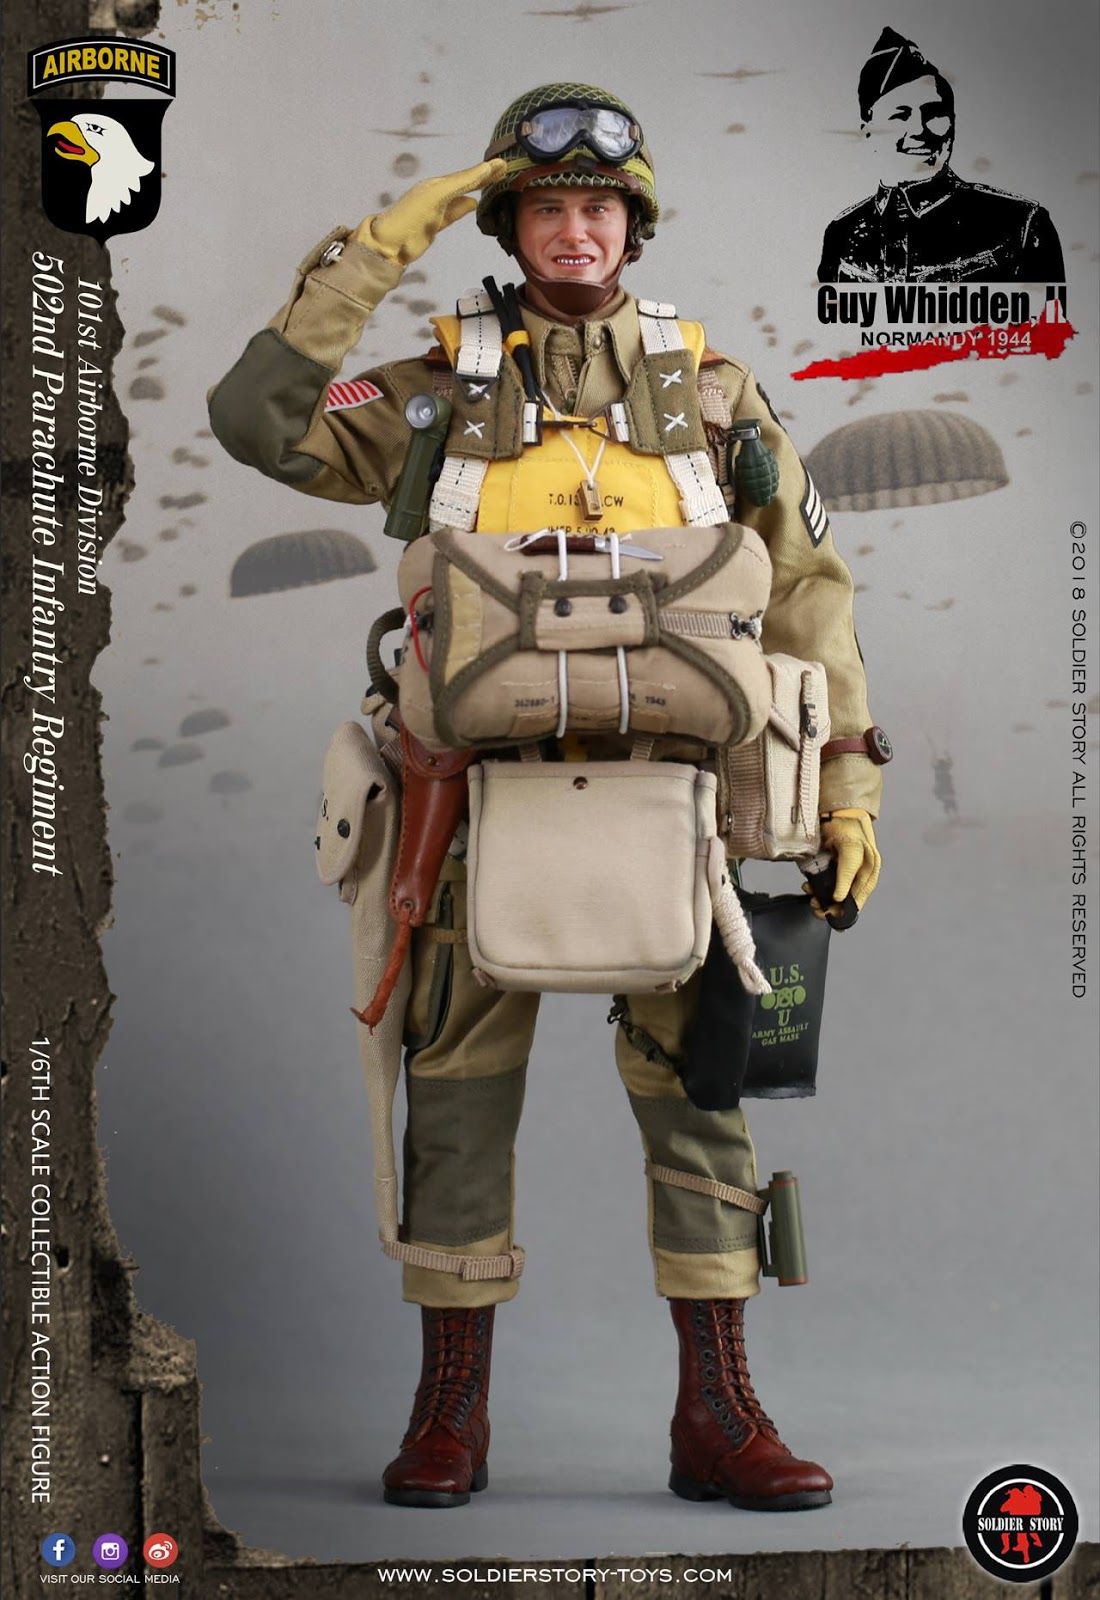 1/6 Scale-Soldier histoire pour pieds Guy Whidden II Airborne-Bottes en cuir